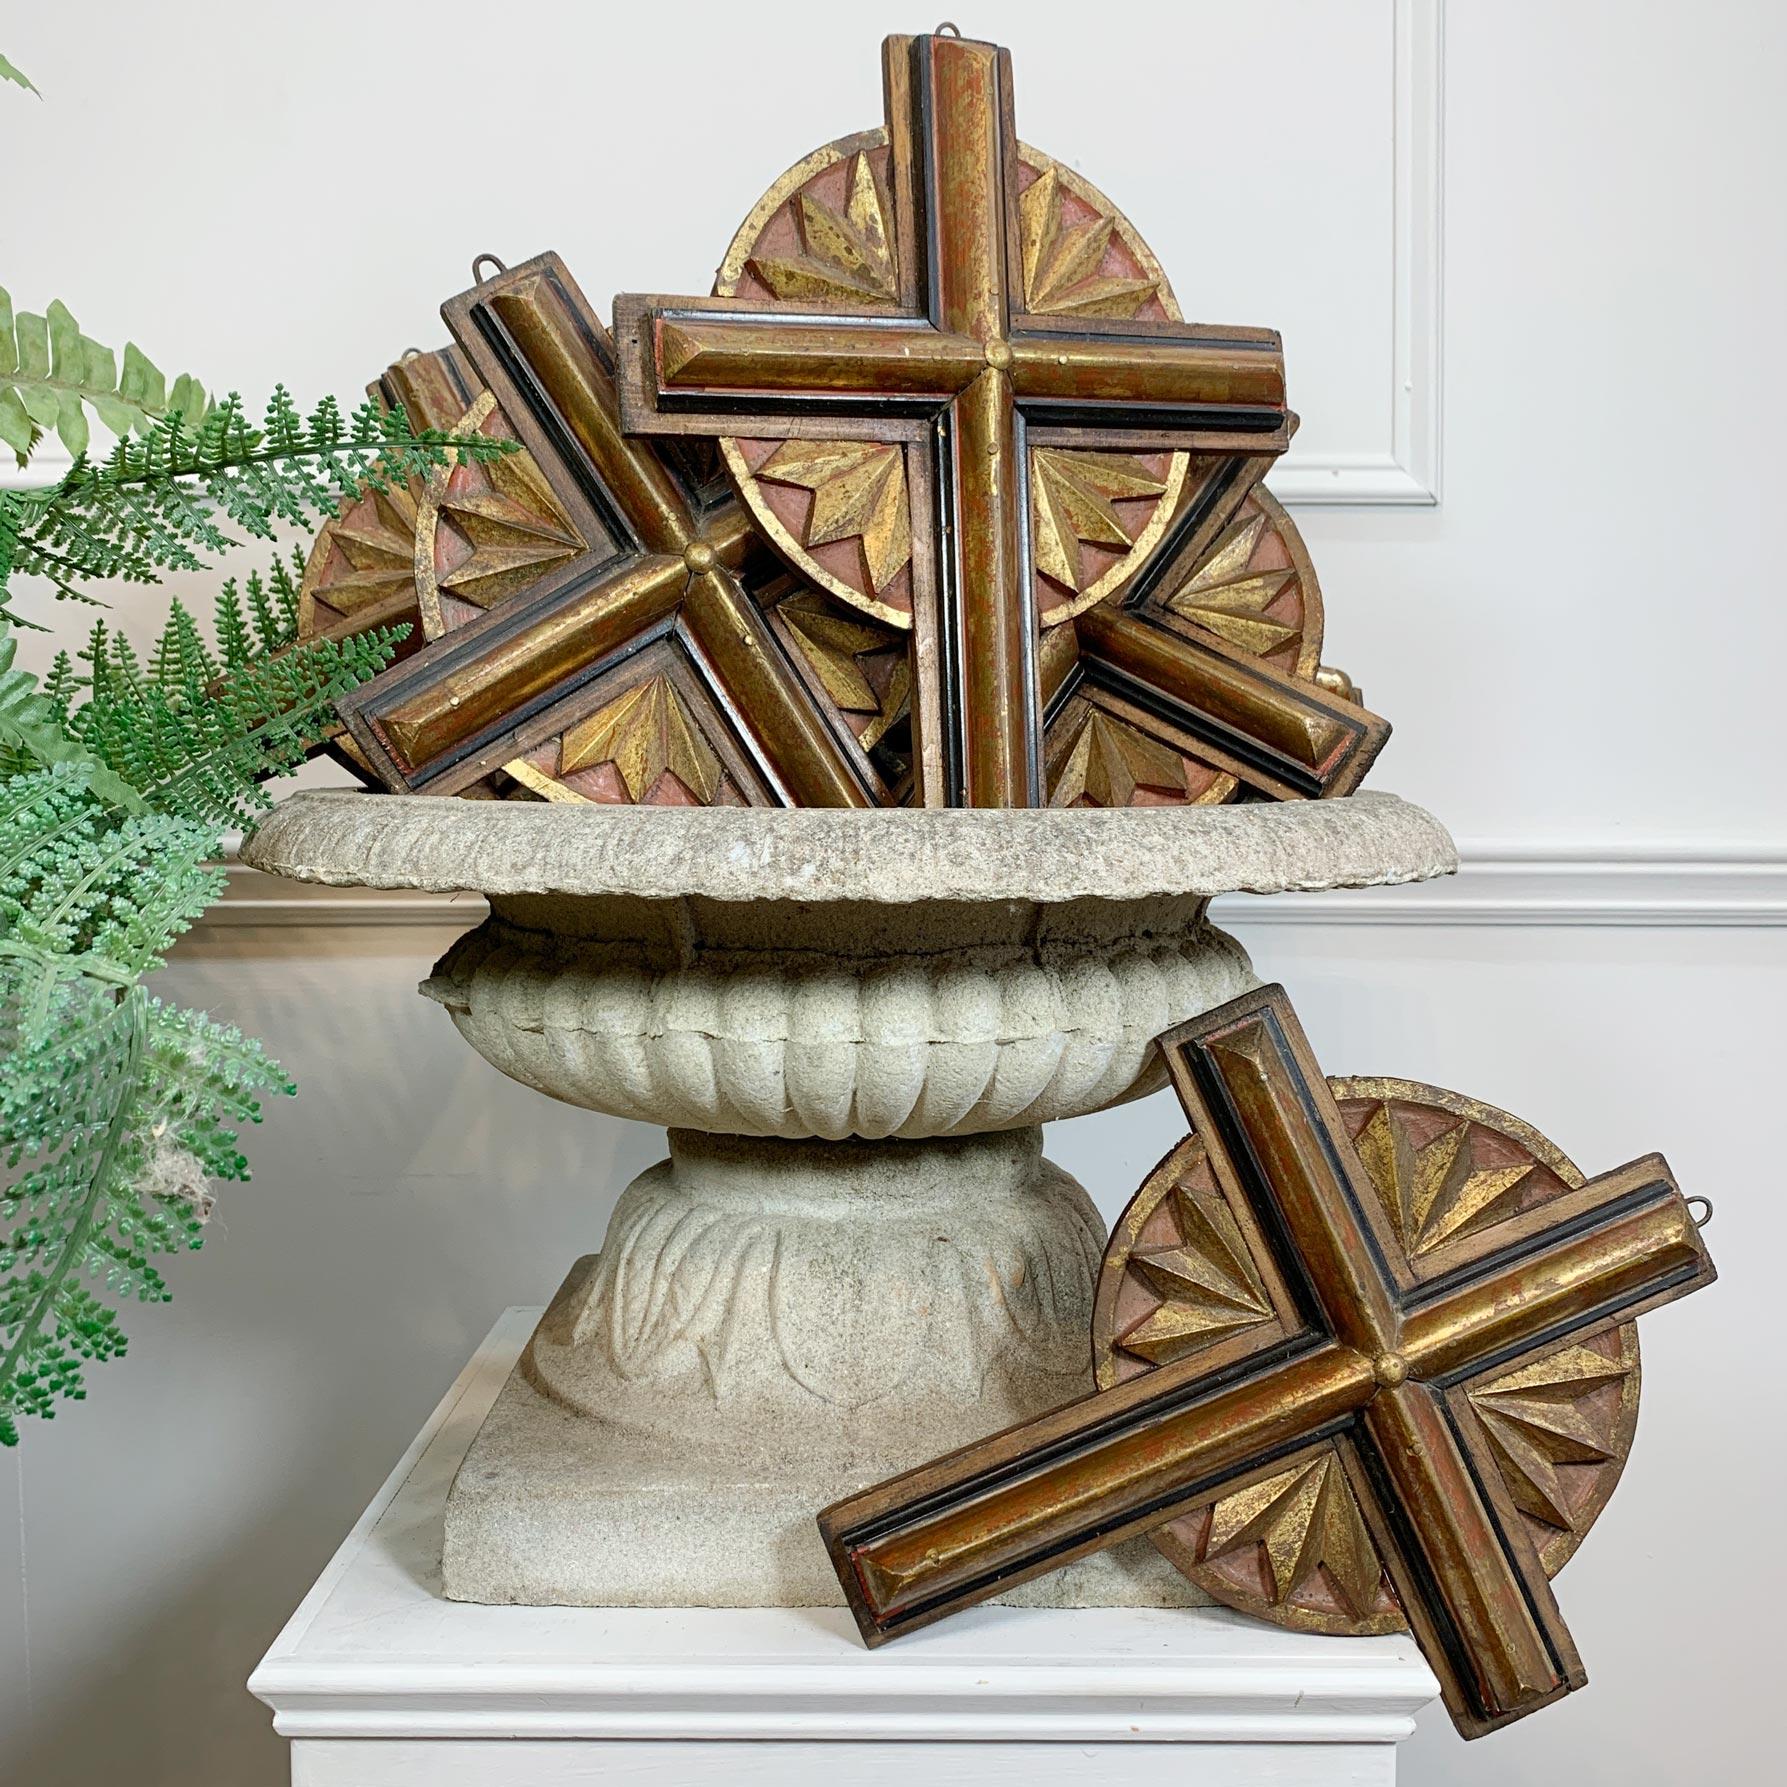 Satz mit 11 Kreuzen
Hölzerne Church's-Kreuze aus dem 20. Jahrhundert 

Diese aus Holz handgefertigten Kirchenkreuze stammen aus den Jahren 1900-1920. Sie sind mit einem sanften Rot und einer Goldauflage verziert. Sie haben alle kleine hängende